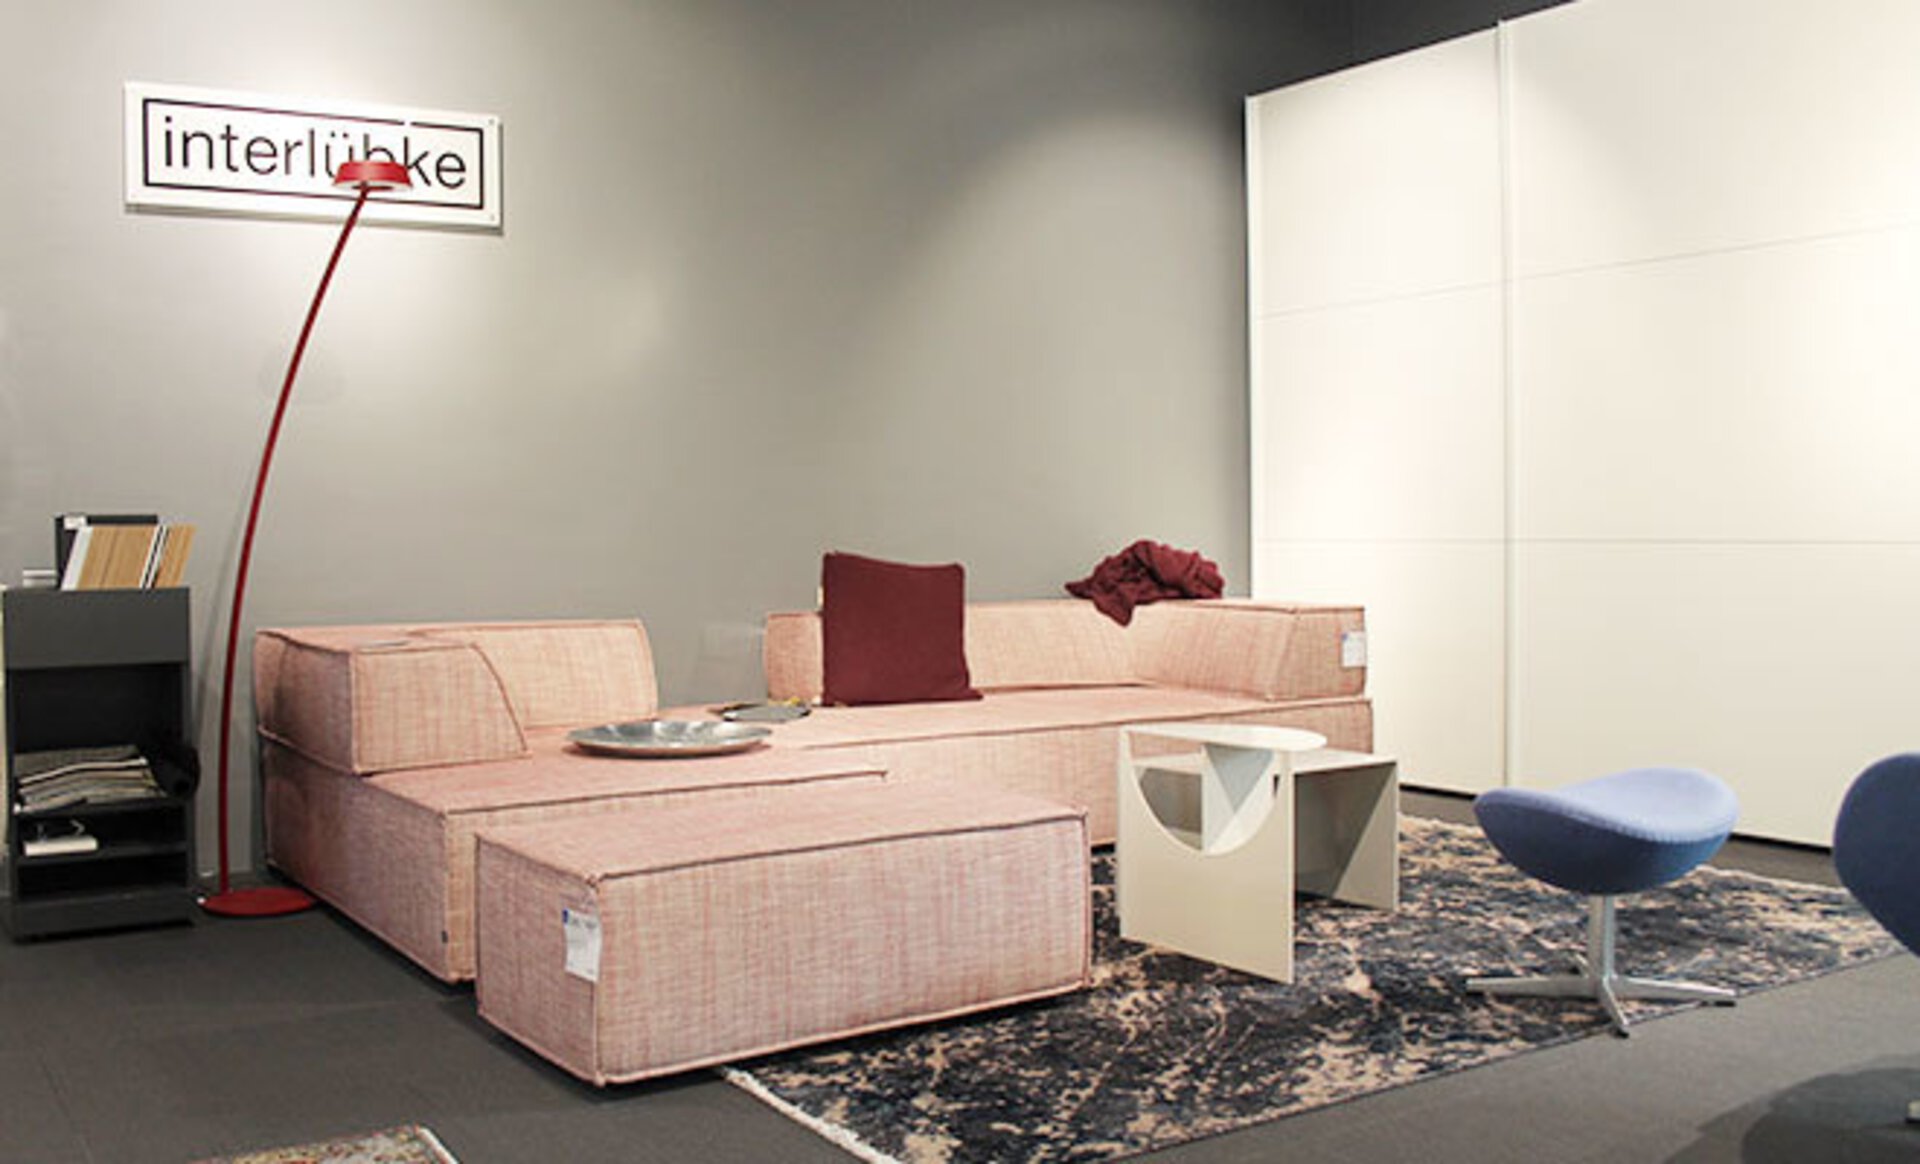 Designer Sofakombination von Interlübke in der Ausstellung von intern iby inhofer